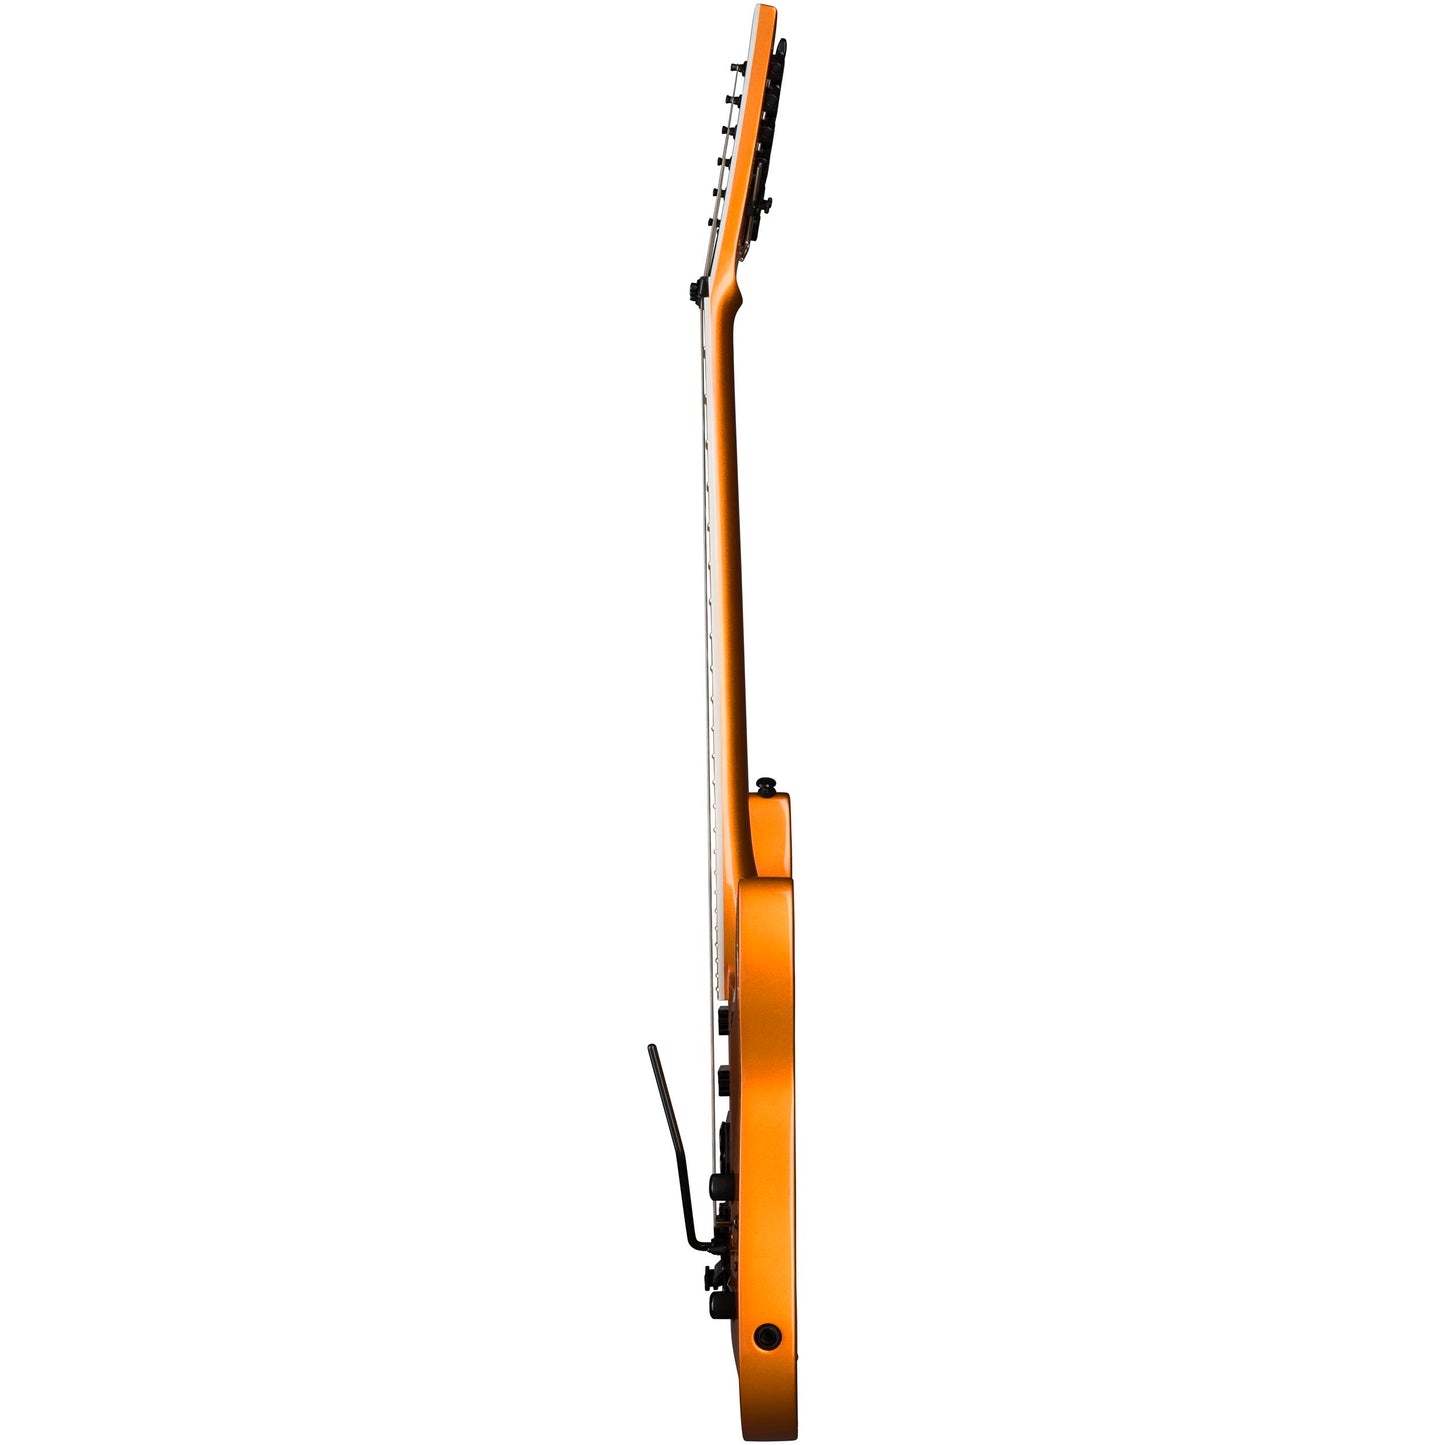 Kramer SM-1 Electric Guitar, Orange Crush